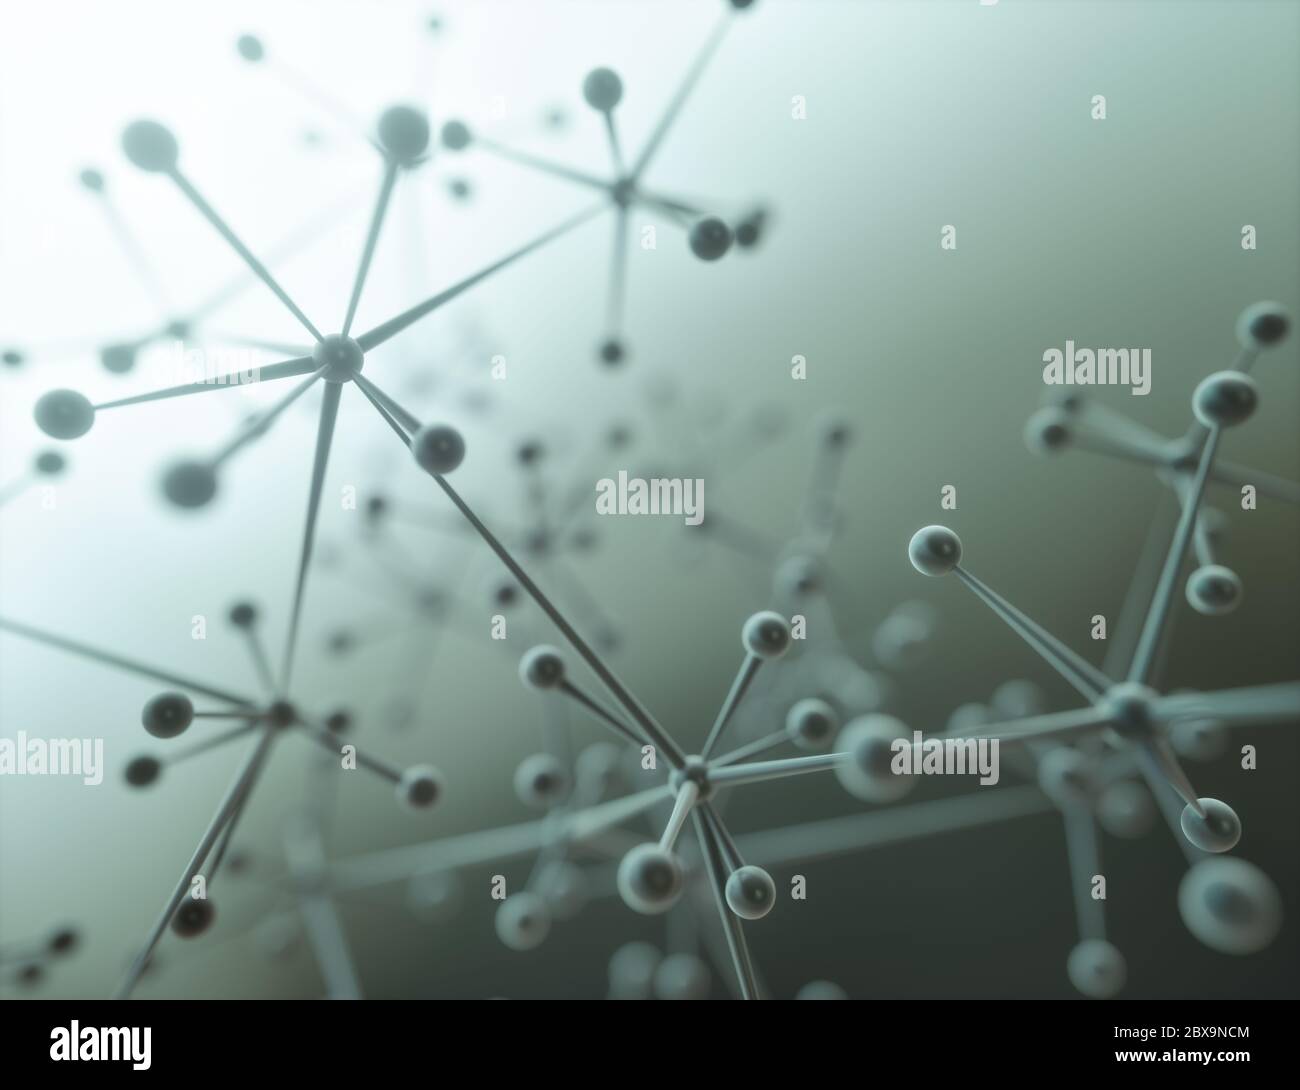 3D-Darstellung eines Moleküls, elektrisch neutrale Gruppe von zwei oder mehr Atomen, die durch chemische Bindungen zusammengehalten werden. Stockfoto